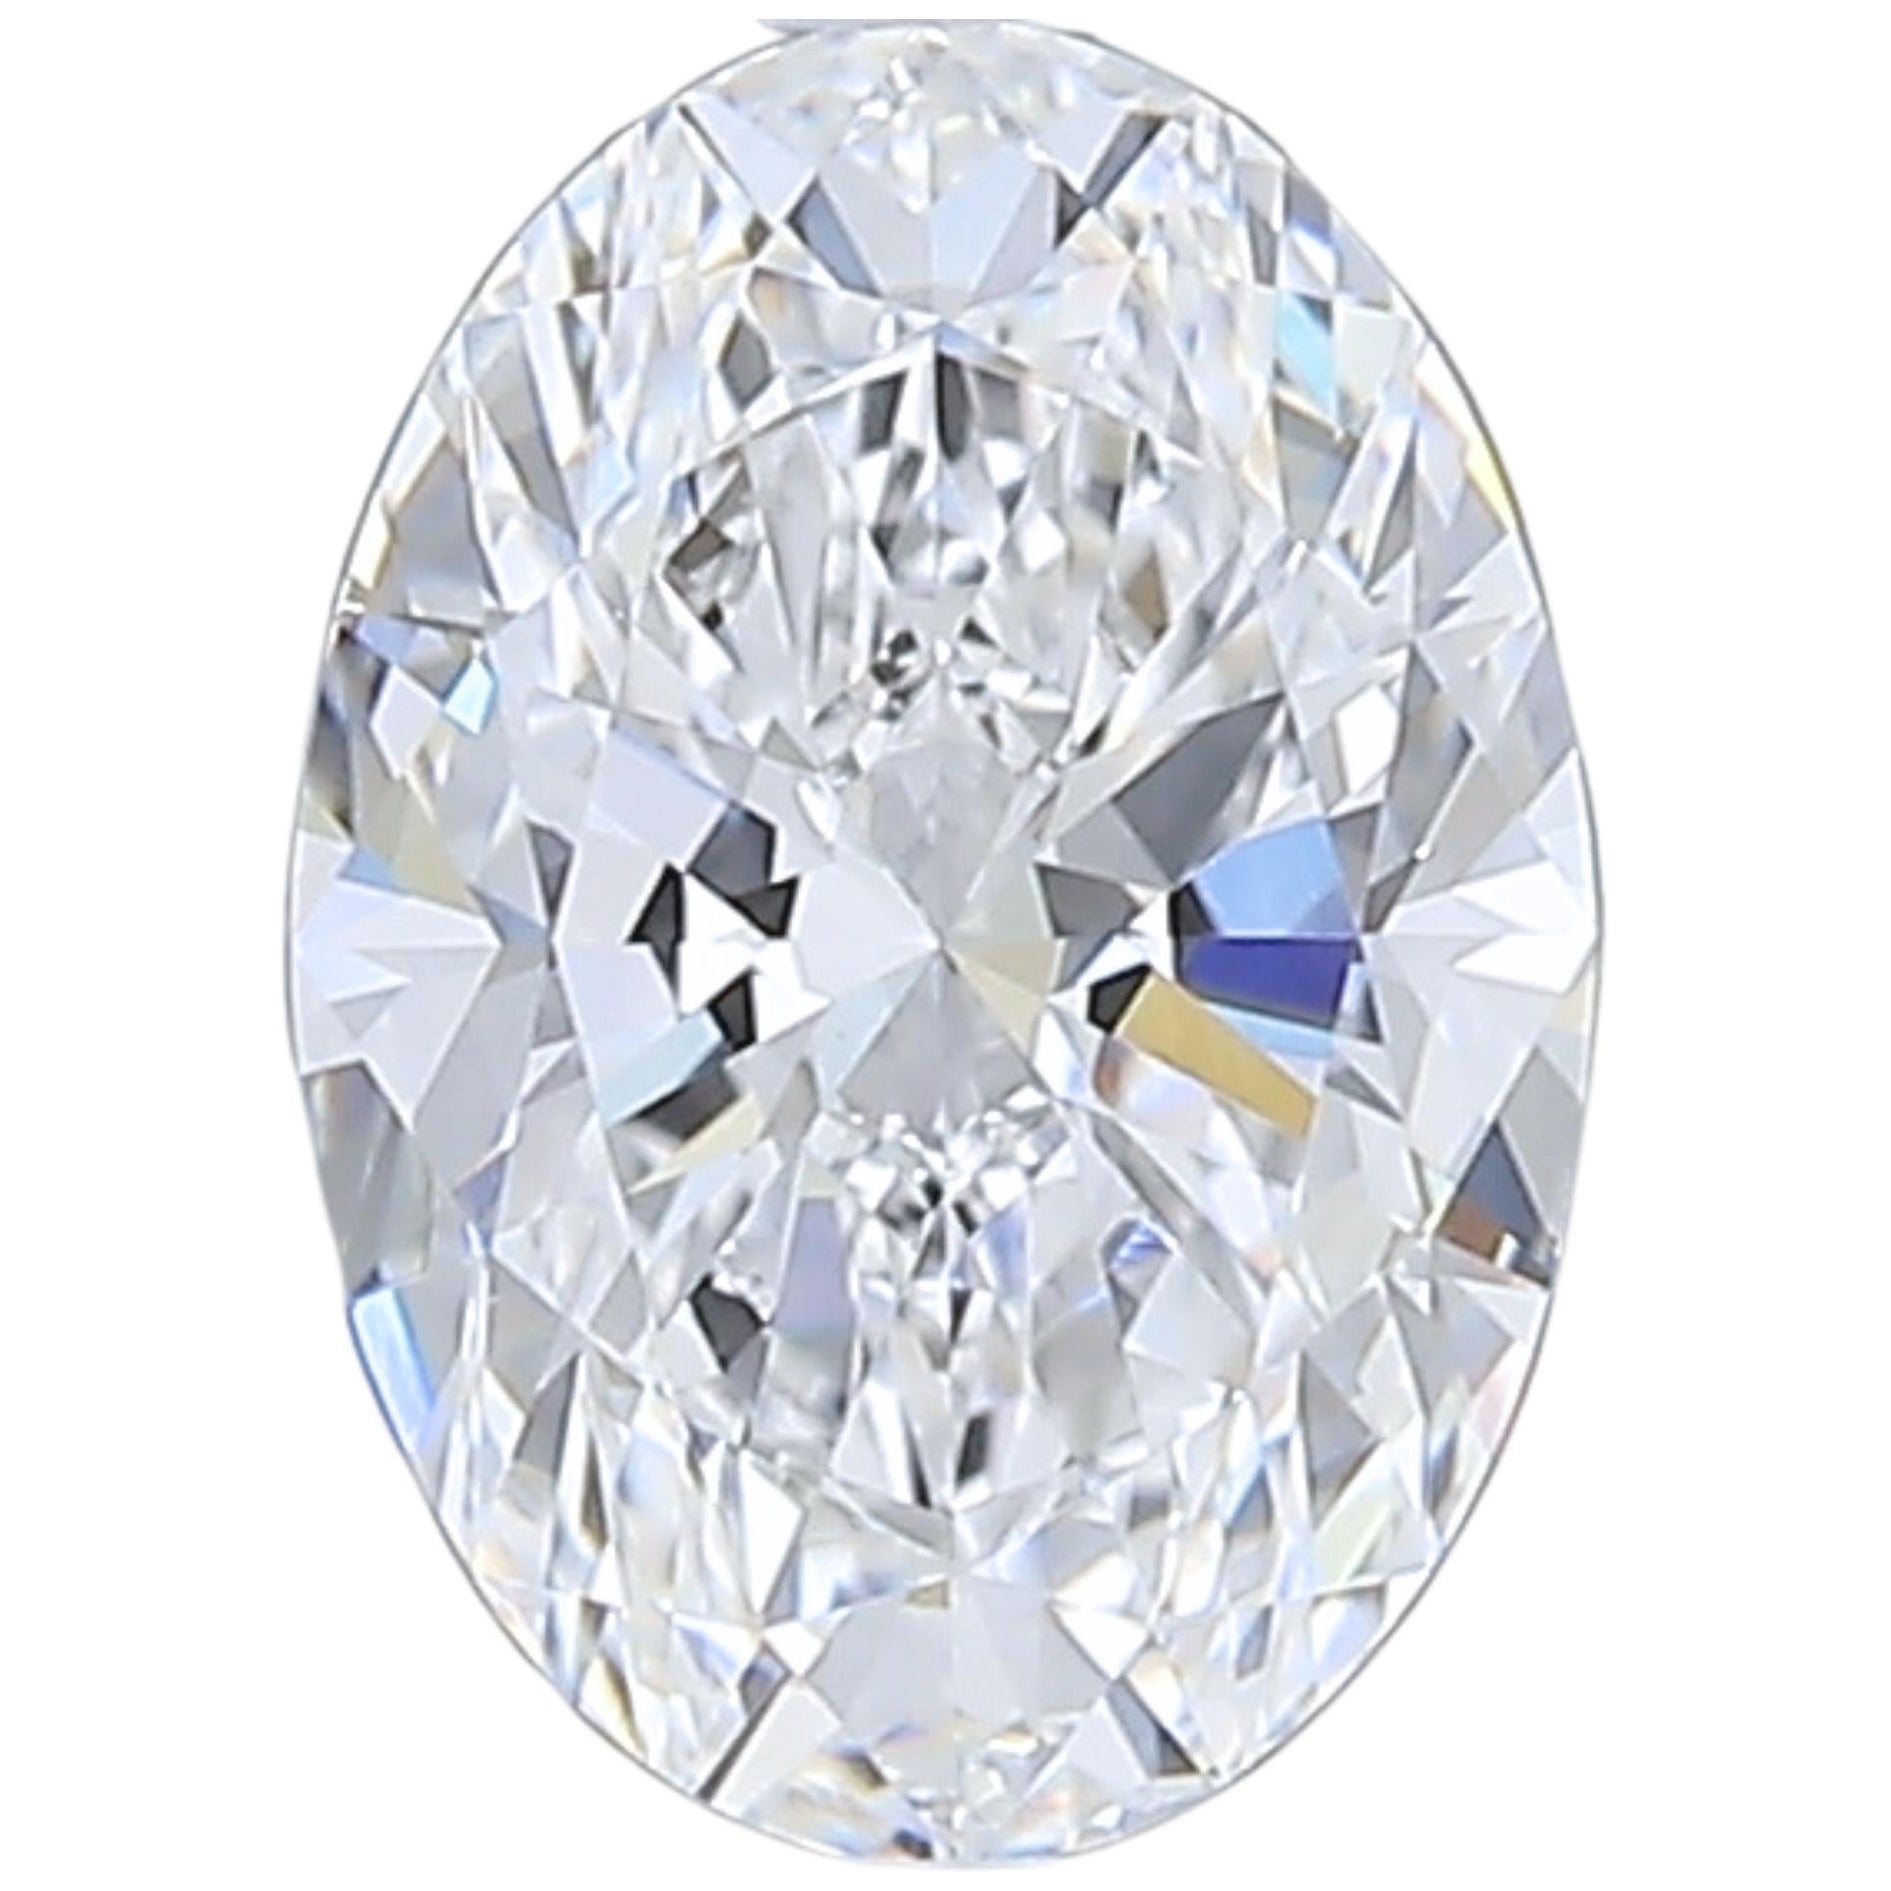 Luxurious 1.02 carat Oval Cut Brilliant Diamond